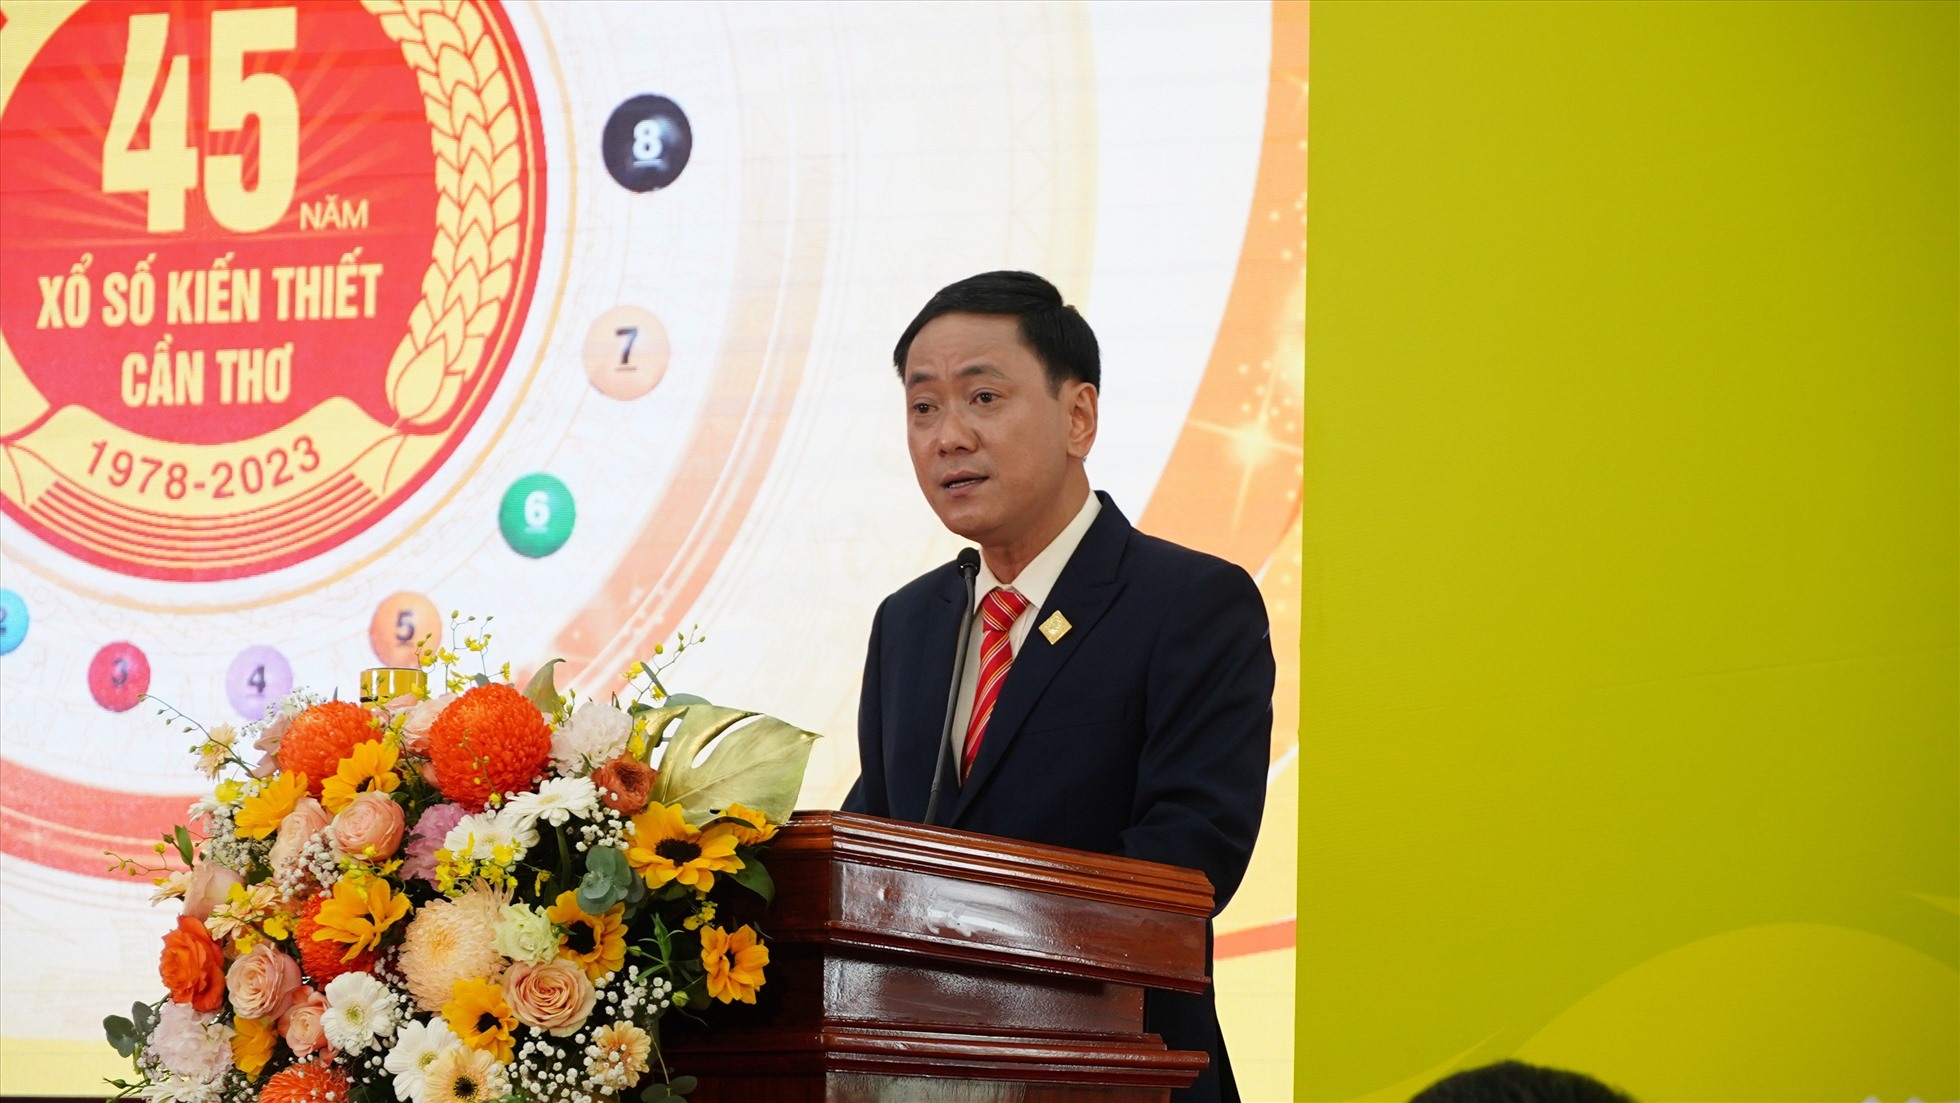 Ông Trần Minh Tâm - Chủ tịch Công ty TNHH Nhà nước MTV Xổ số kiến thiết Cần Thơ báo cáo quá trình hoạt động cũng như phát triển. Ảnh: Tạ Quang